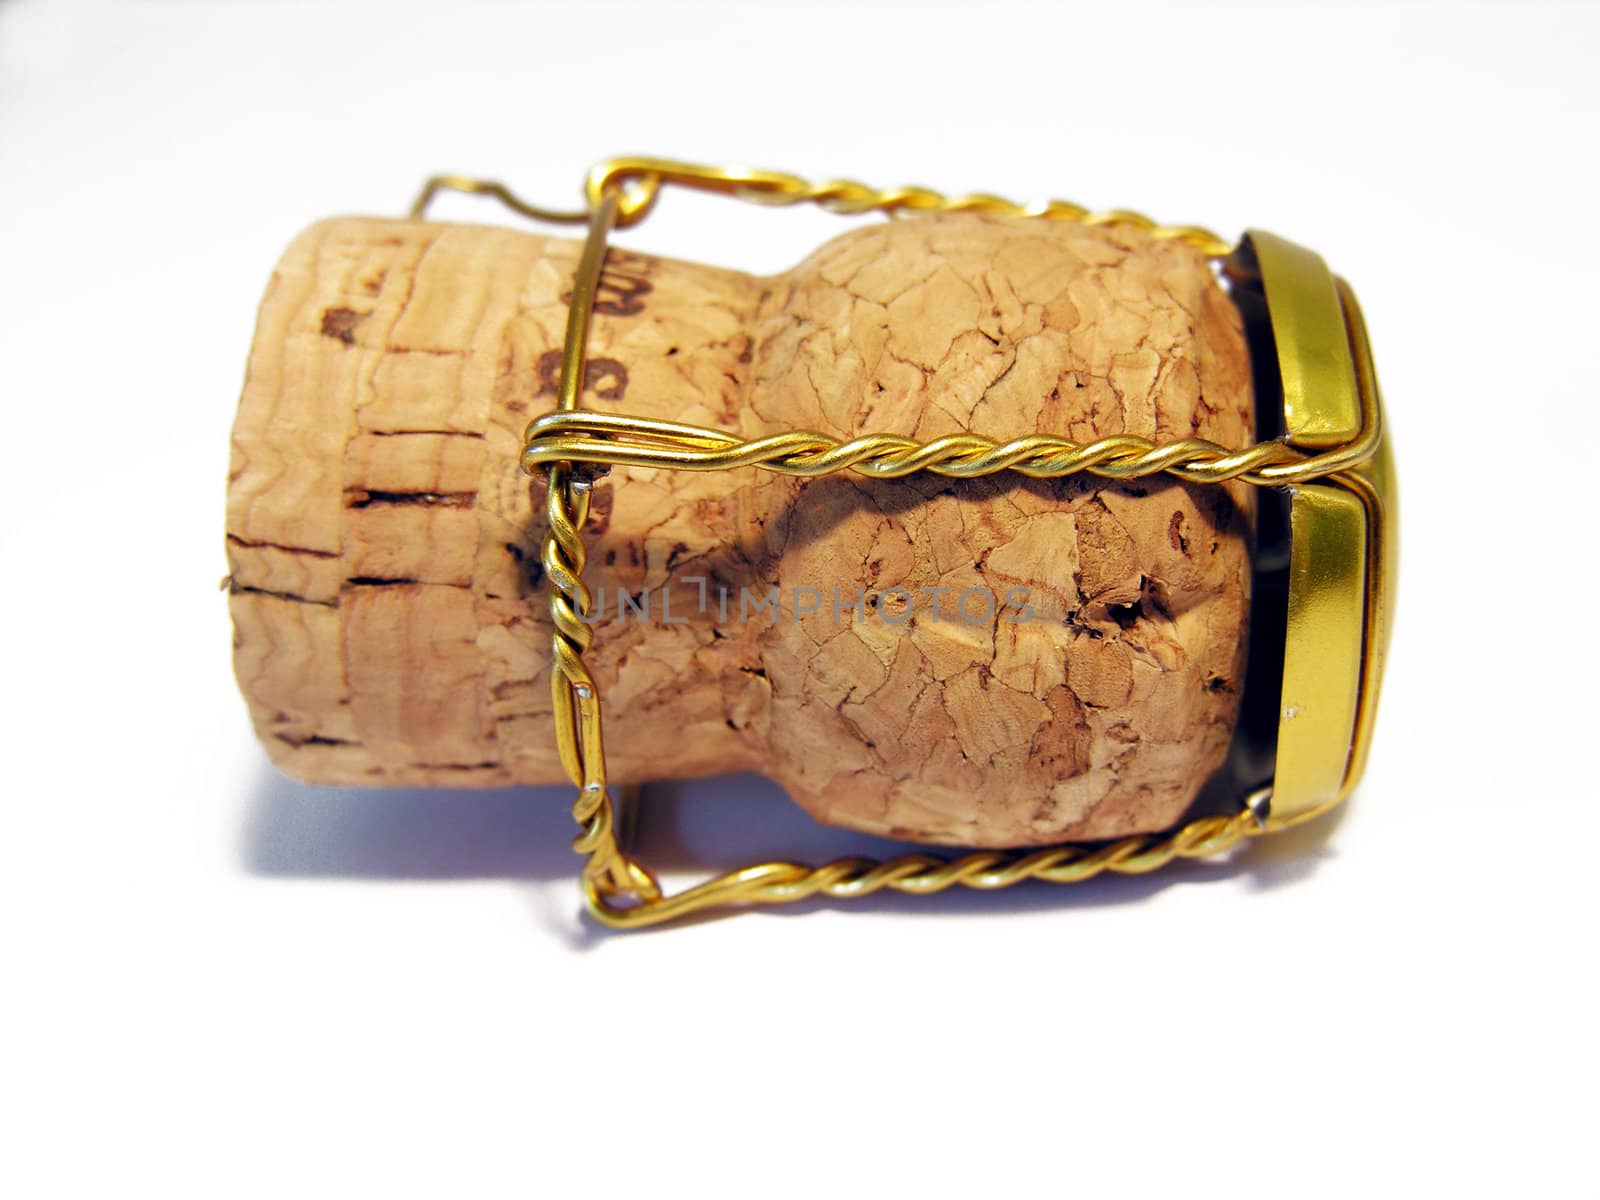 wine cork by kjpargeter